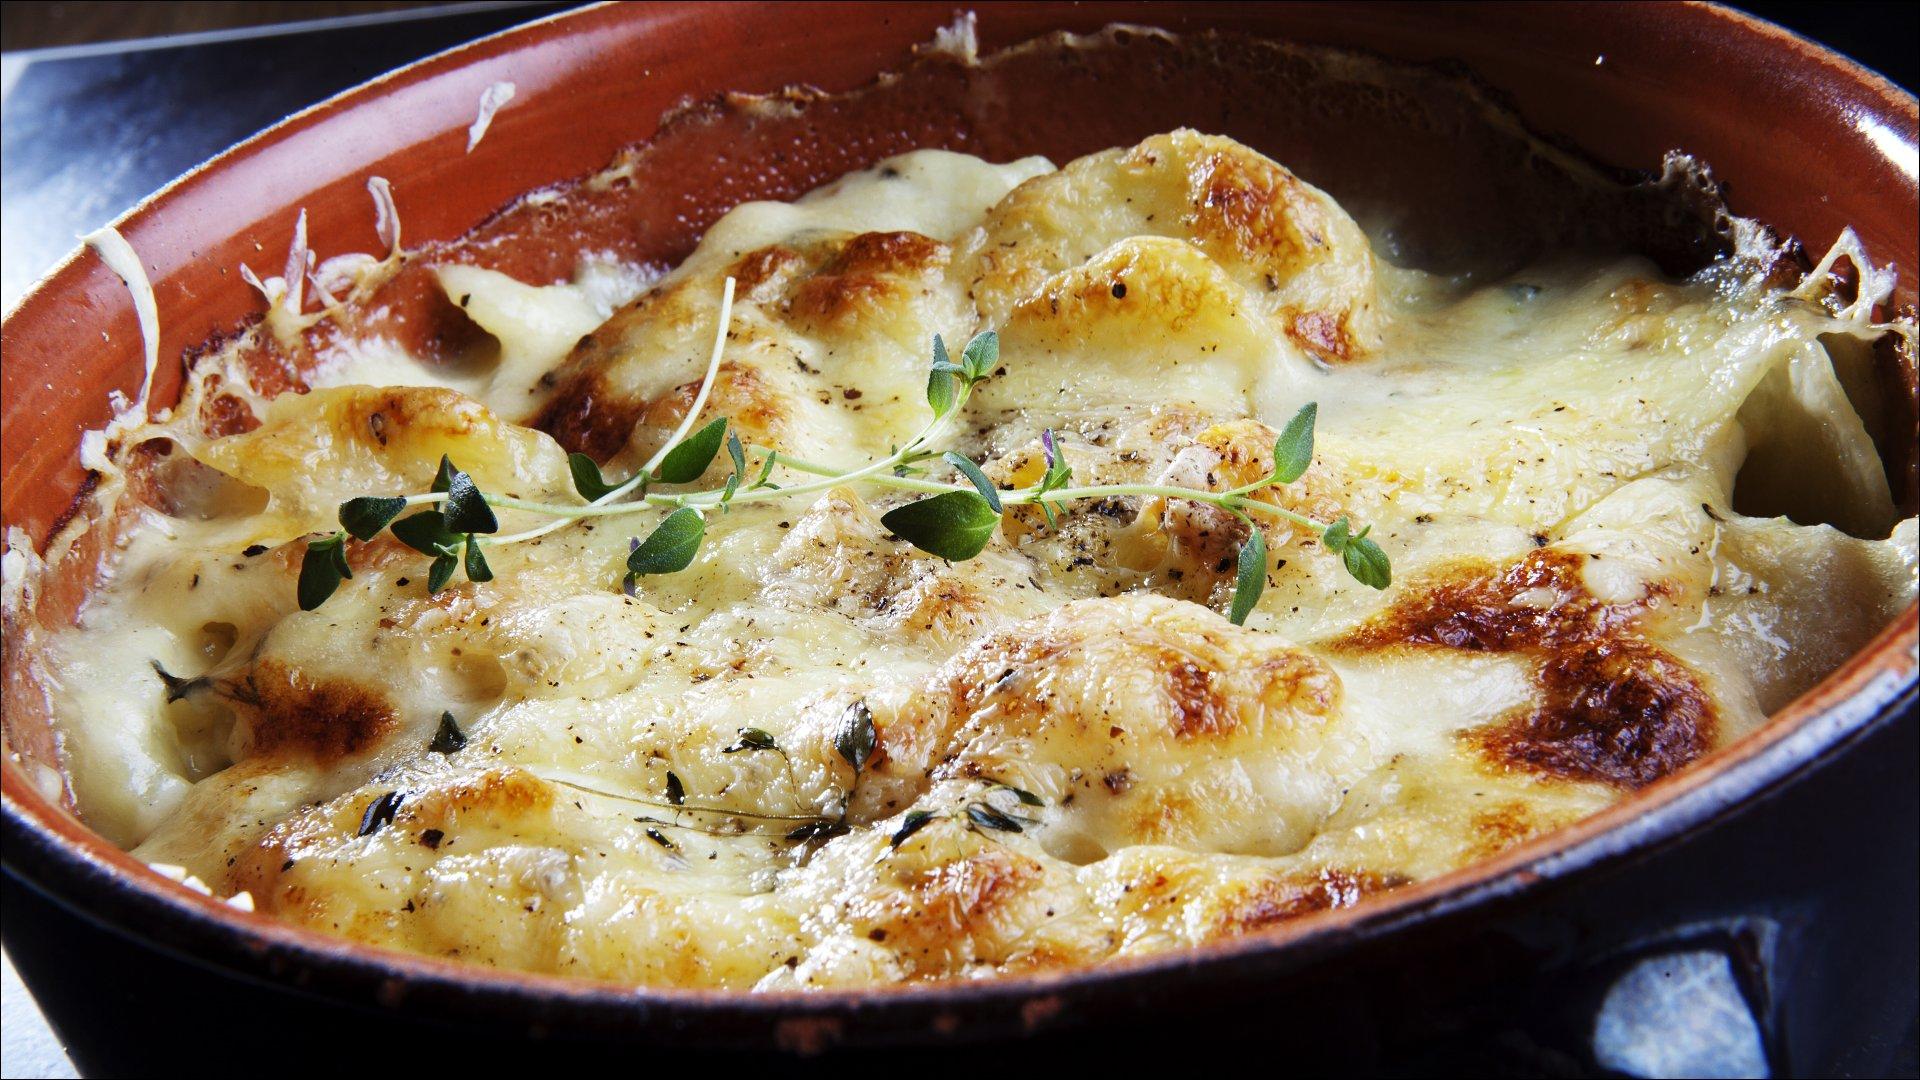 Rens potetene og del dem opp i tynne skiver. Kok opp melk og fløte i en kjele, legg i potetskivene og finhakket hvitløk. Rør rundt, slik at de ikke brenner seg fast i bunnen av kjelen. La potetene kokes lett møre i fløtemelken før halvparten av osten røres inn. Tøm potetene over i ildfast ovnsform, dryss over resten av osten. Gratiner potetene i ovnen på 180 grader i ca. 20-30 minutter til osten er gyllen. Skrell aspargesstilkene, smørdamp møre i vann tilsatt litt smør.